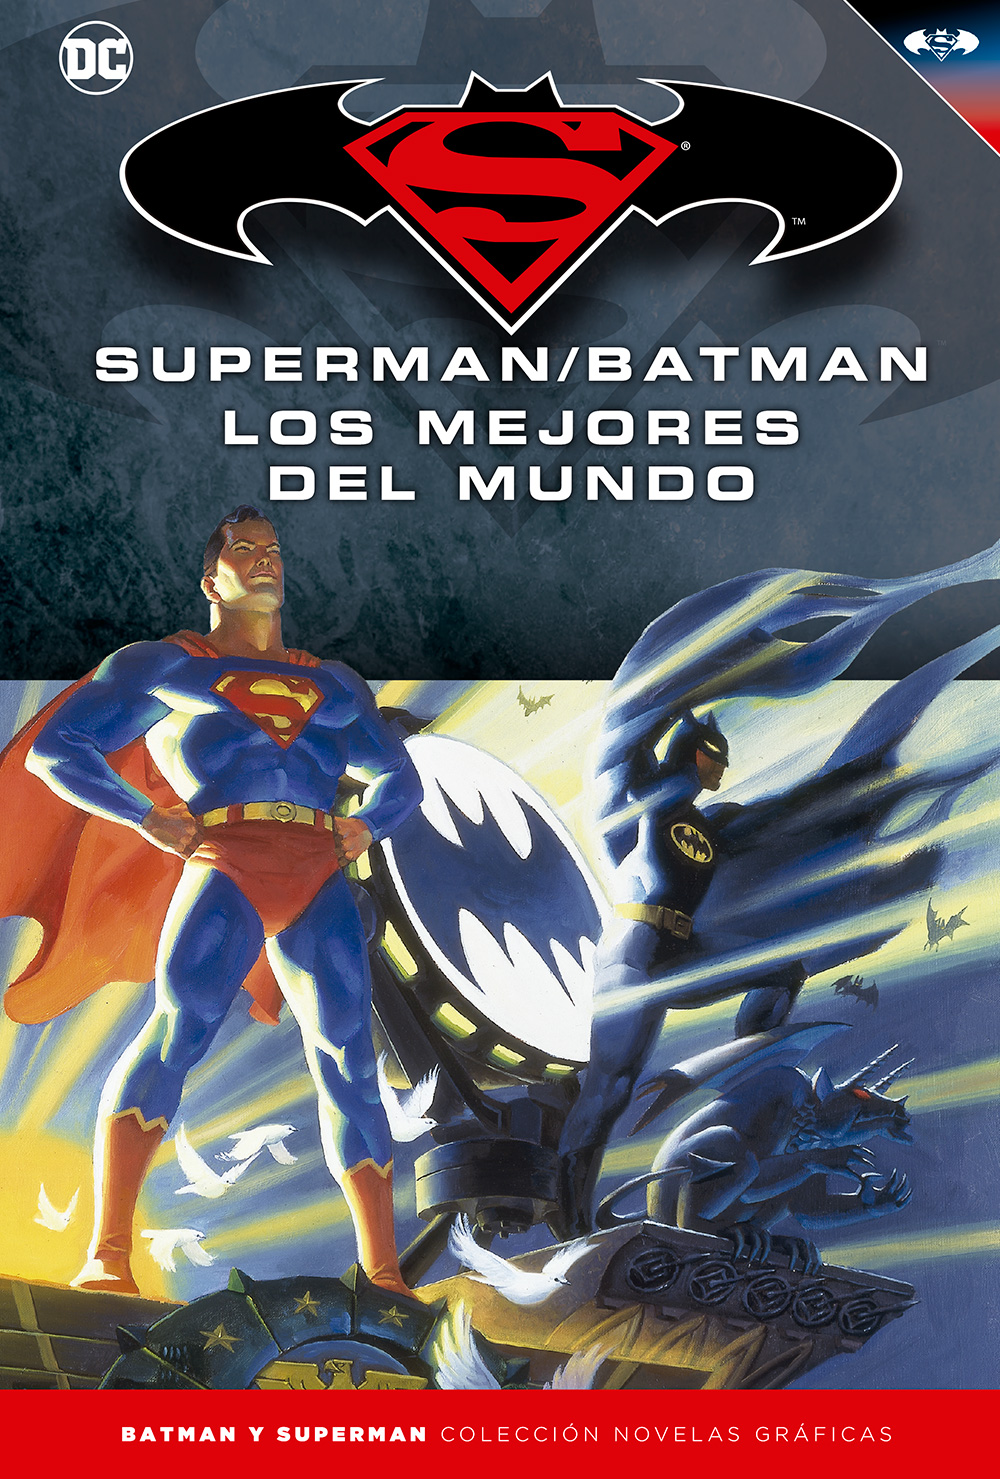 65-67 - [DC - Salvat] Batman y Superman: Colección Novelas Gráficas - Página 7 Portada_BMSM_16_LosMejoresdelMundo